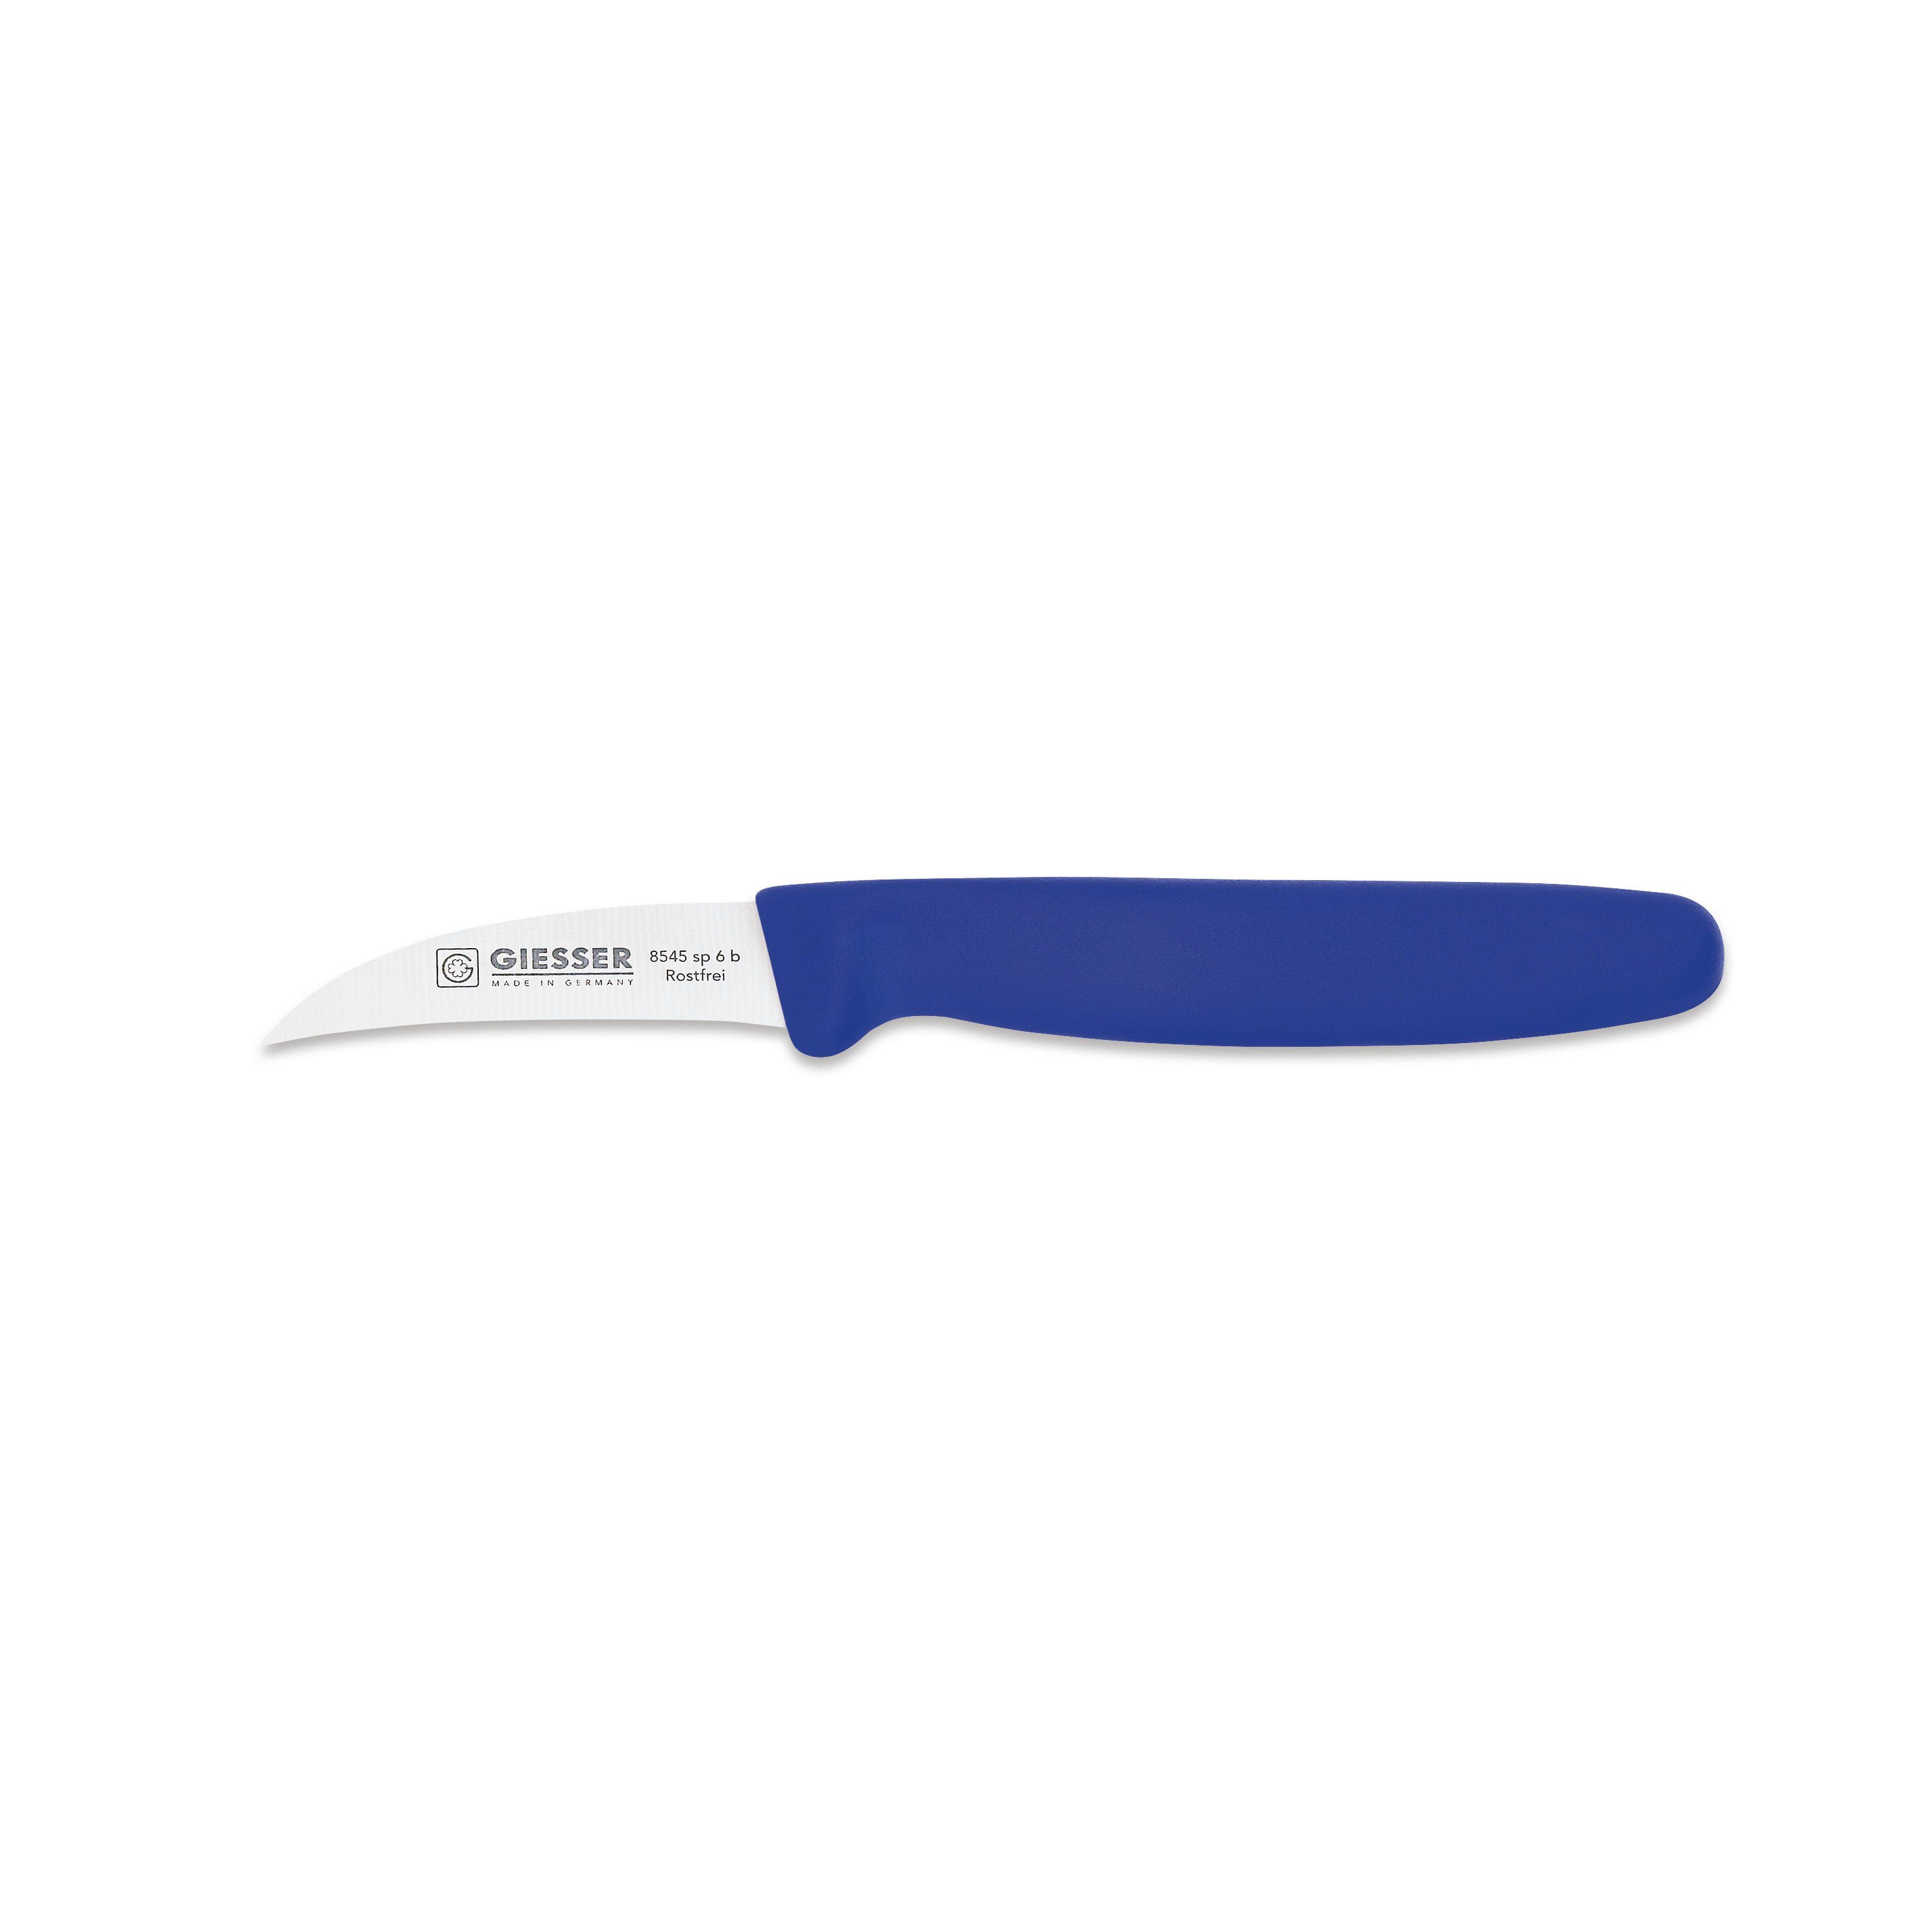 Giesser Messer Schälmesser Gemüsemesser 8545 sp 6, Handabzug, Klinge 6 cm Hohle-Schneide blau